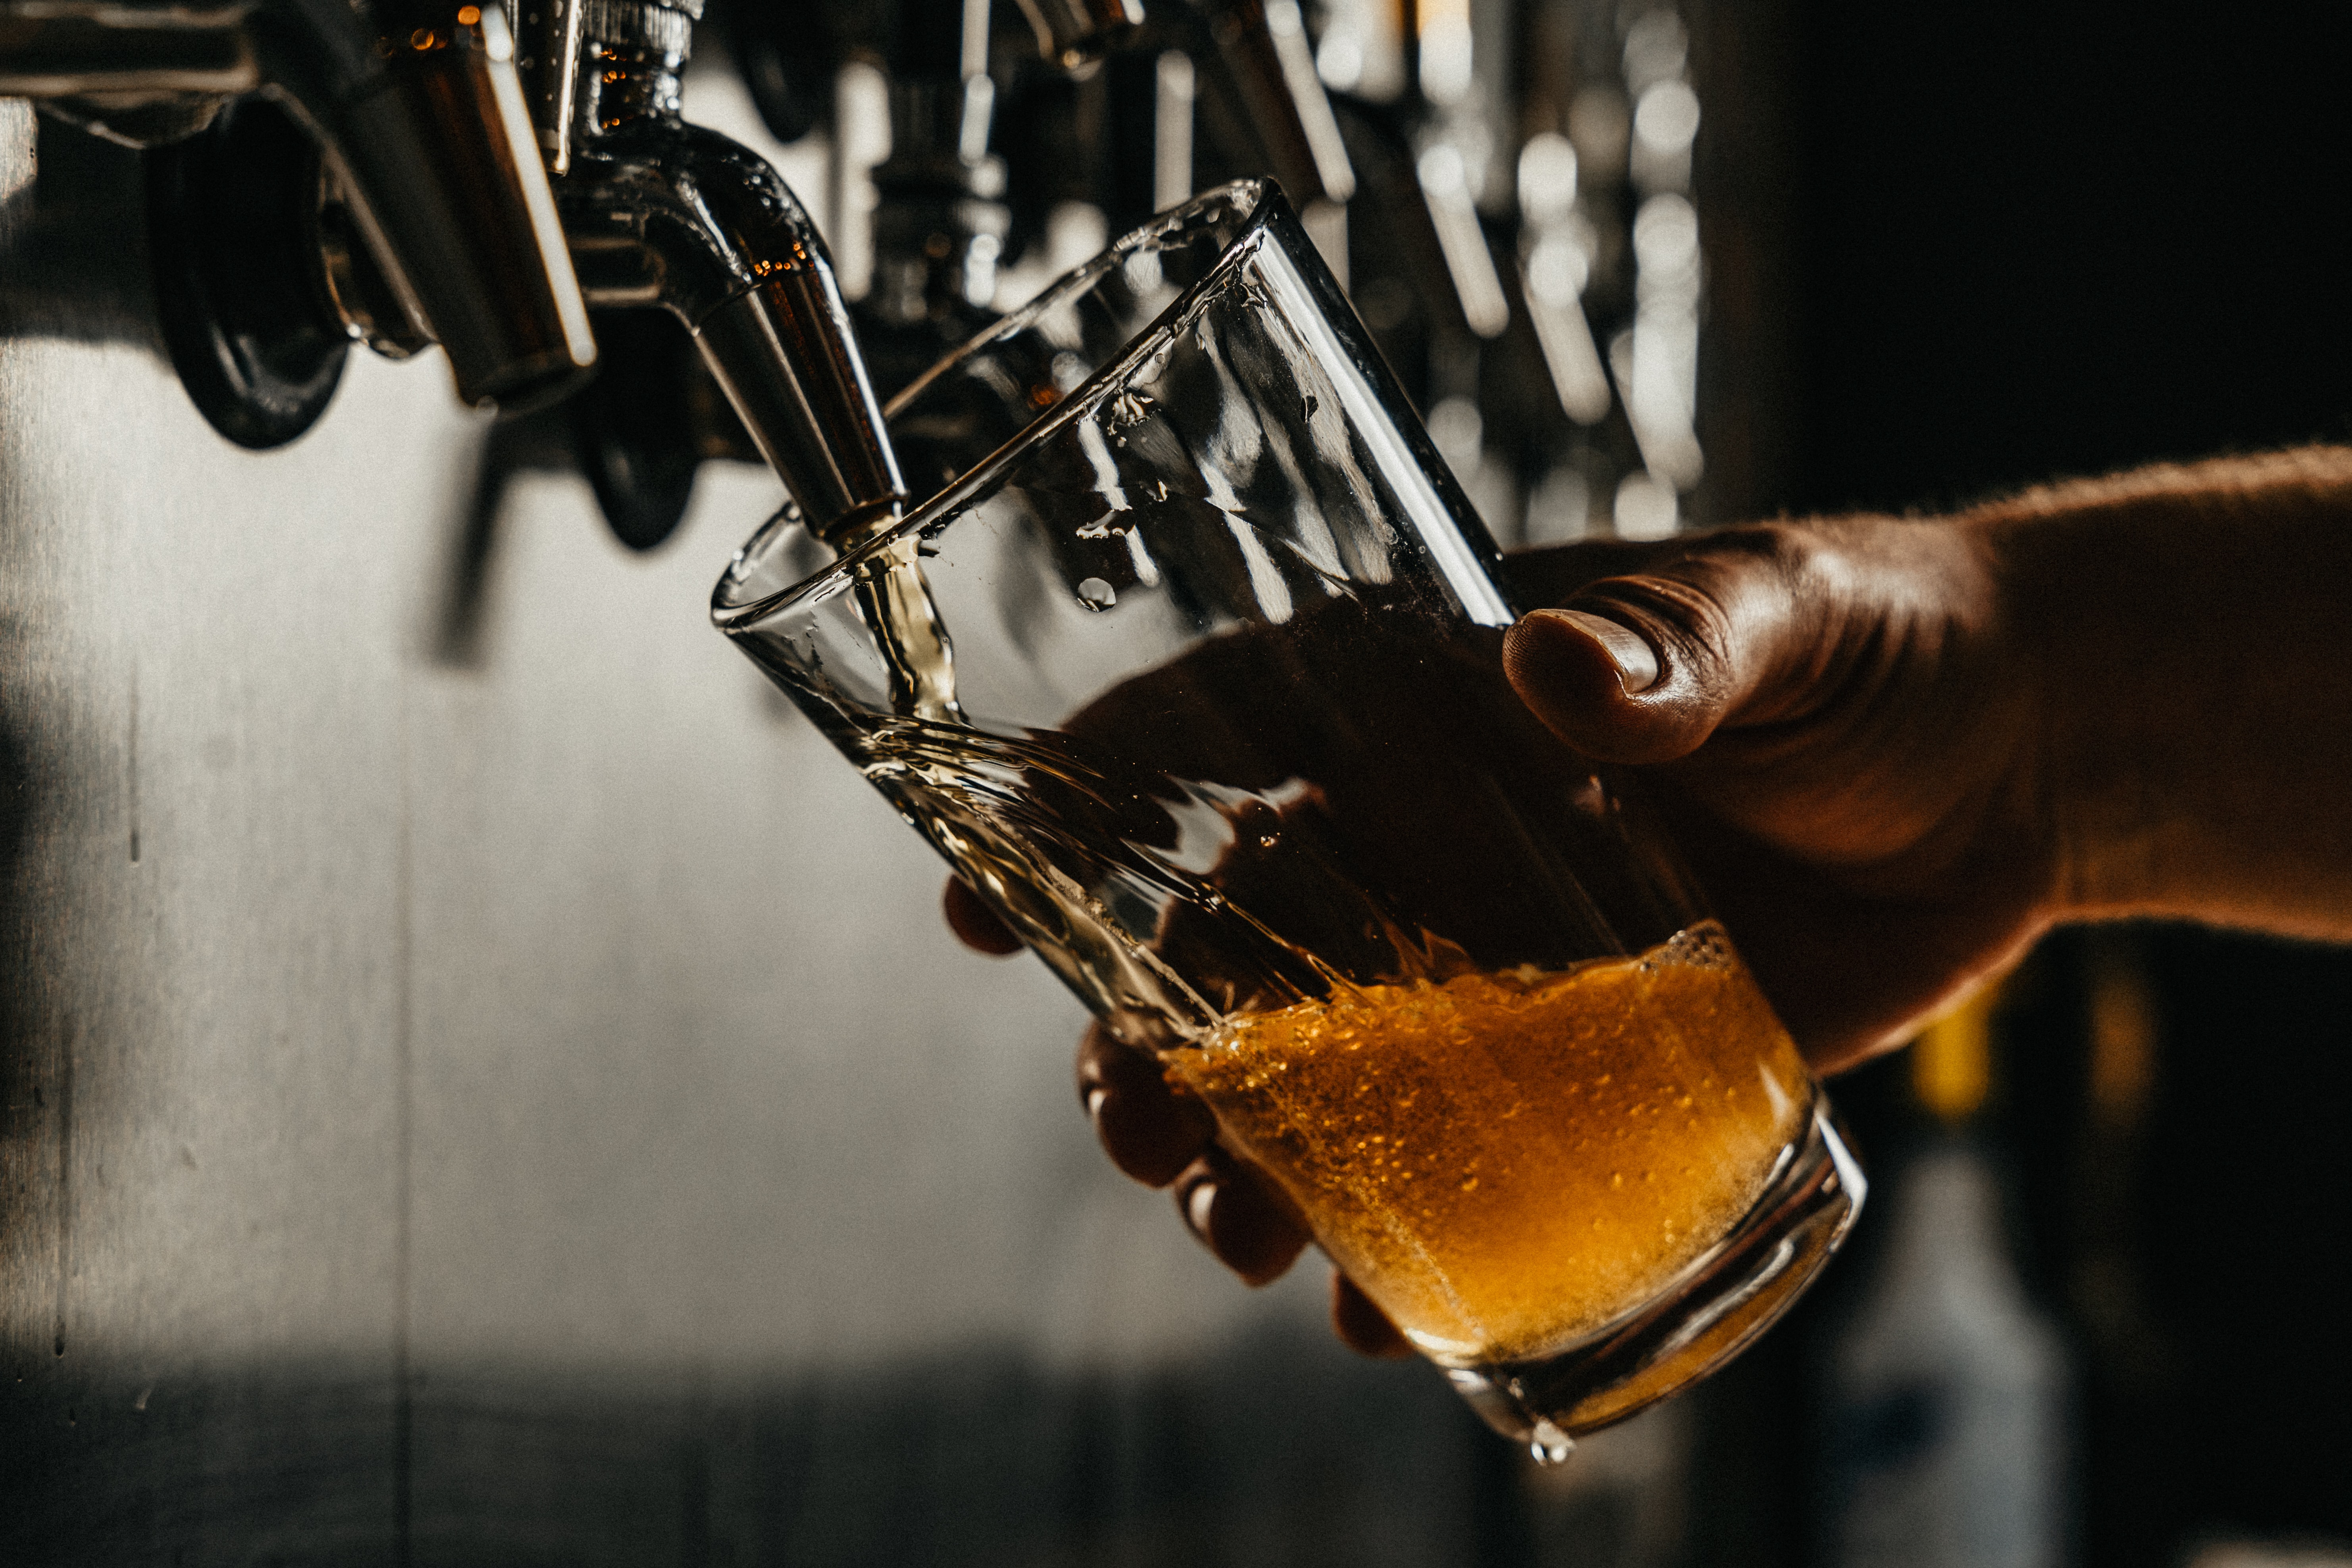 4 Factors Affecting Costs Of Australian Craft Beer